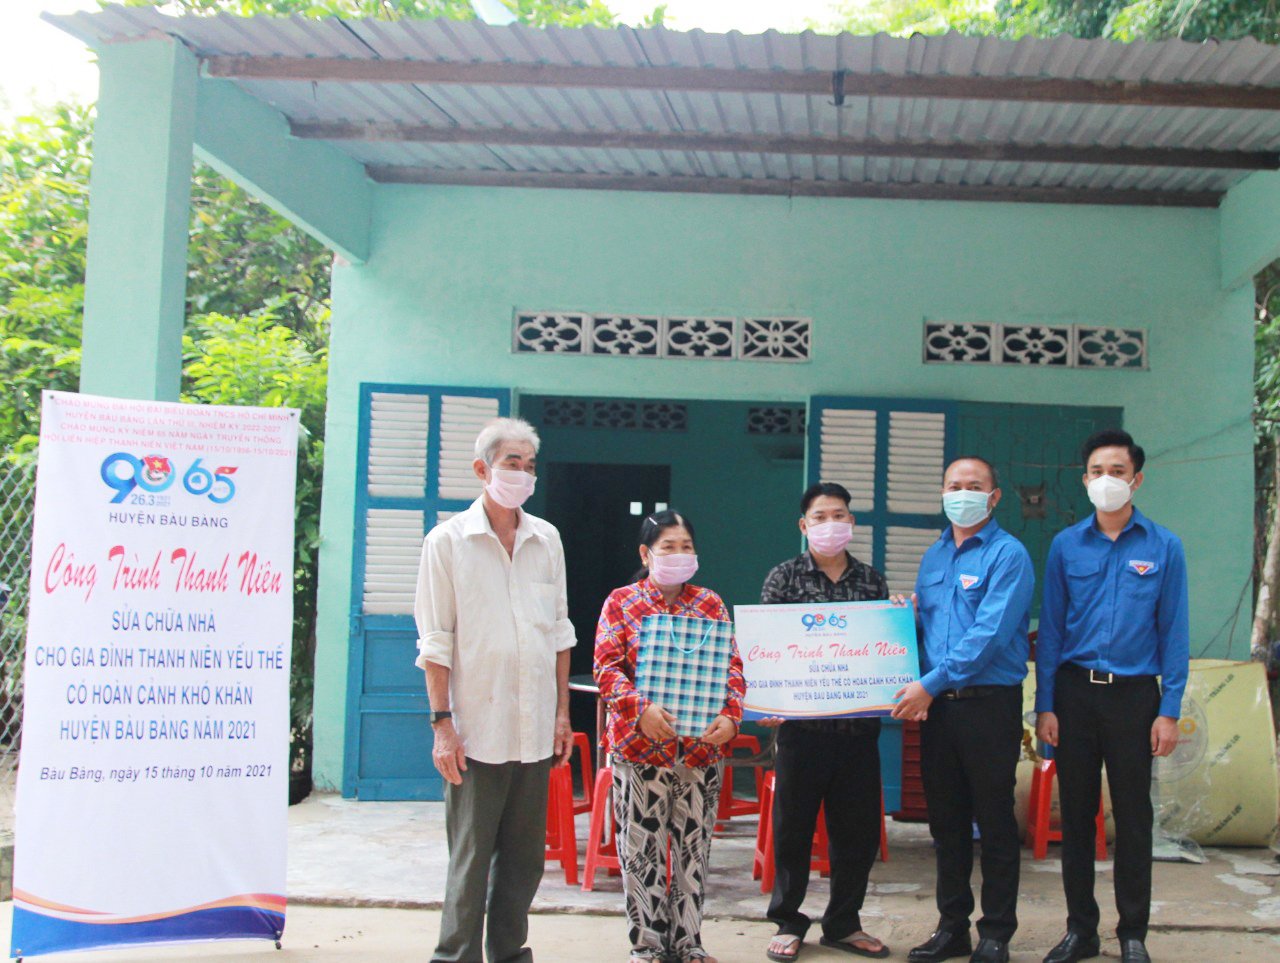 Huyện đoàn Bàu Bàng thực hiện công trình sửa chữa nhà cho thanh niên yếu thế